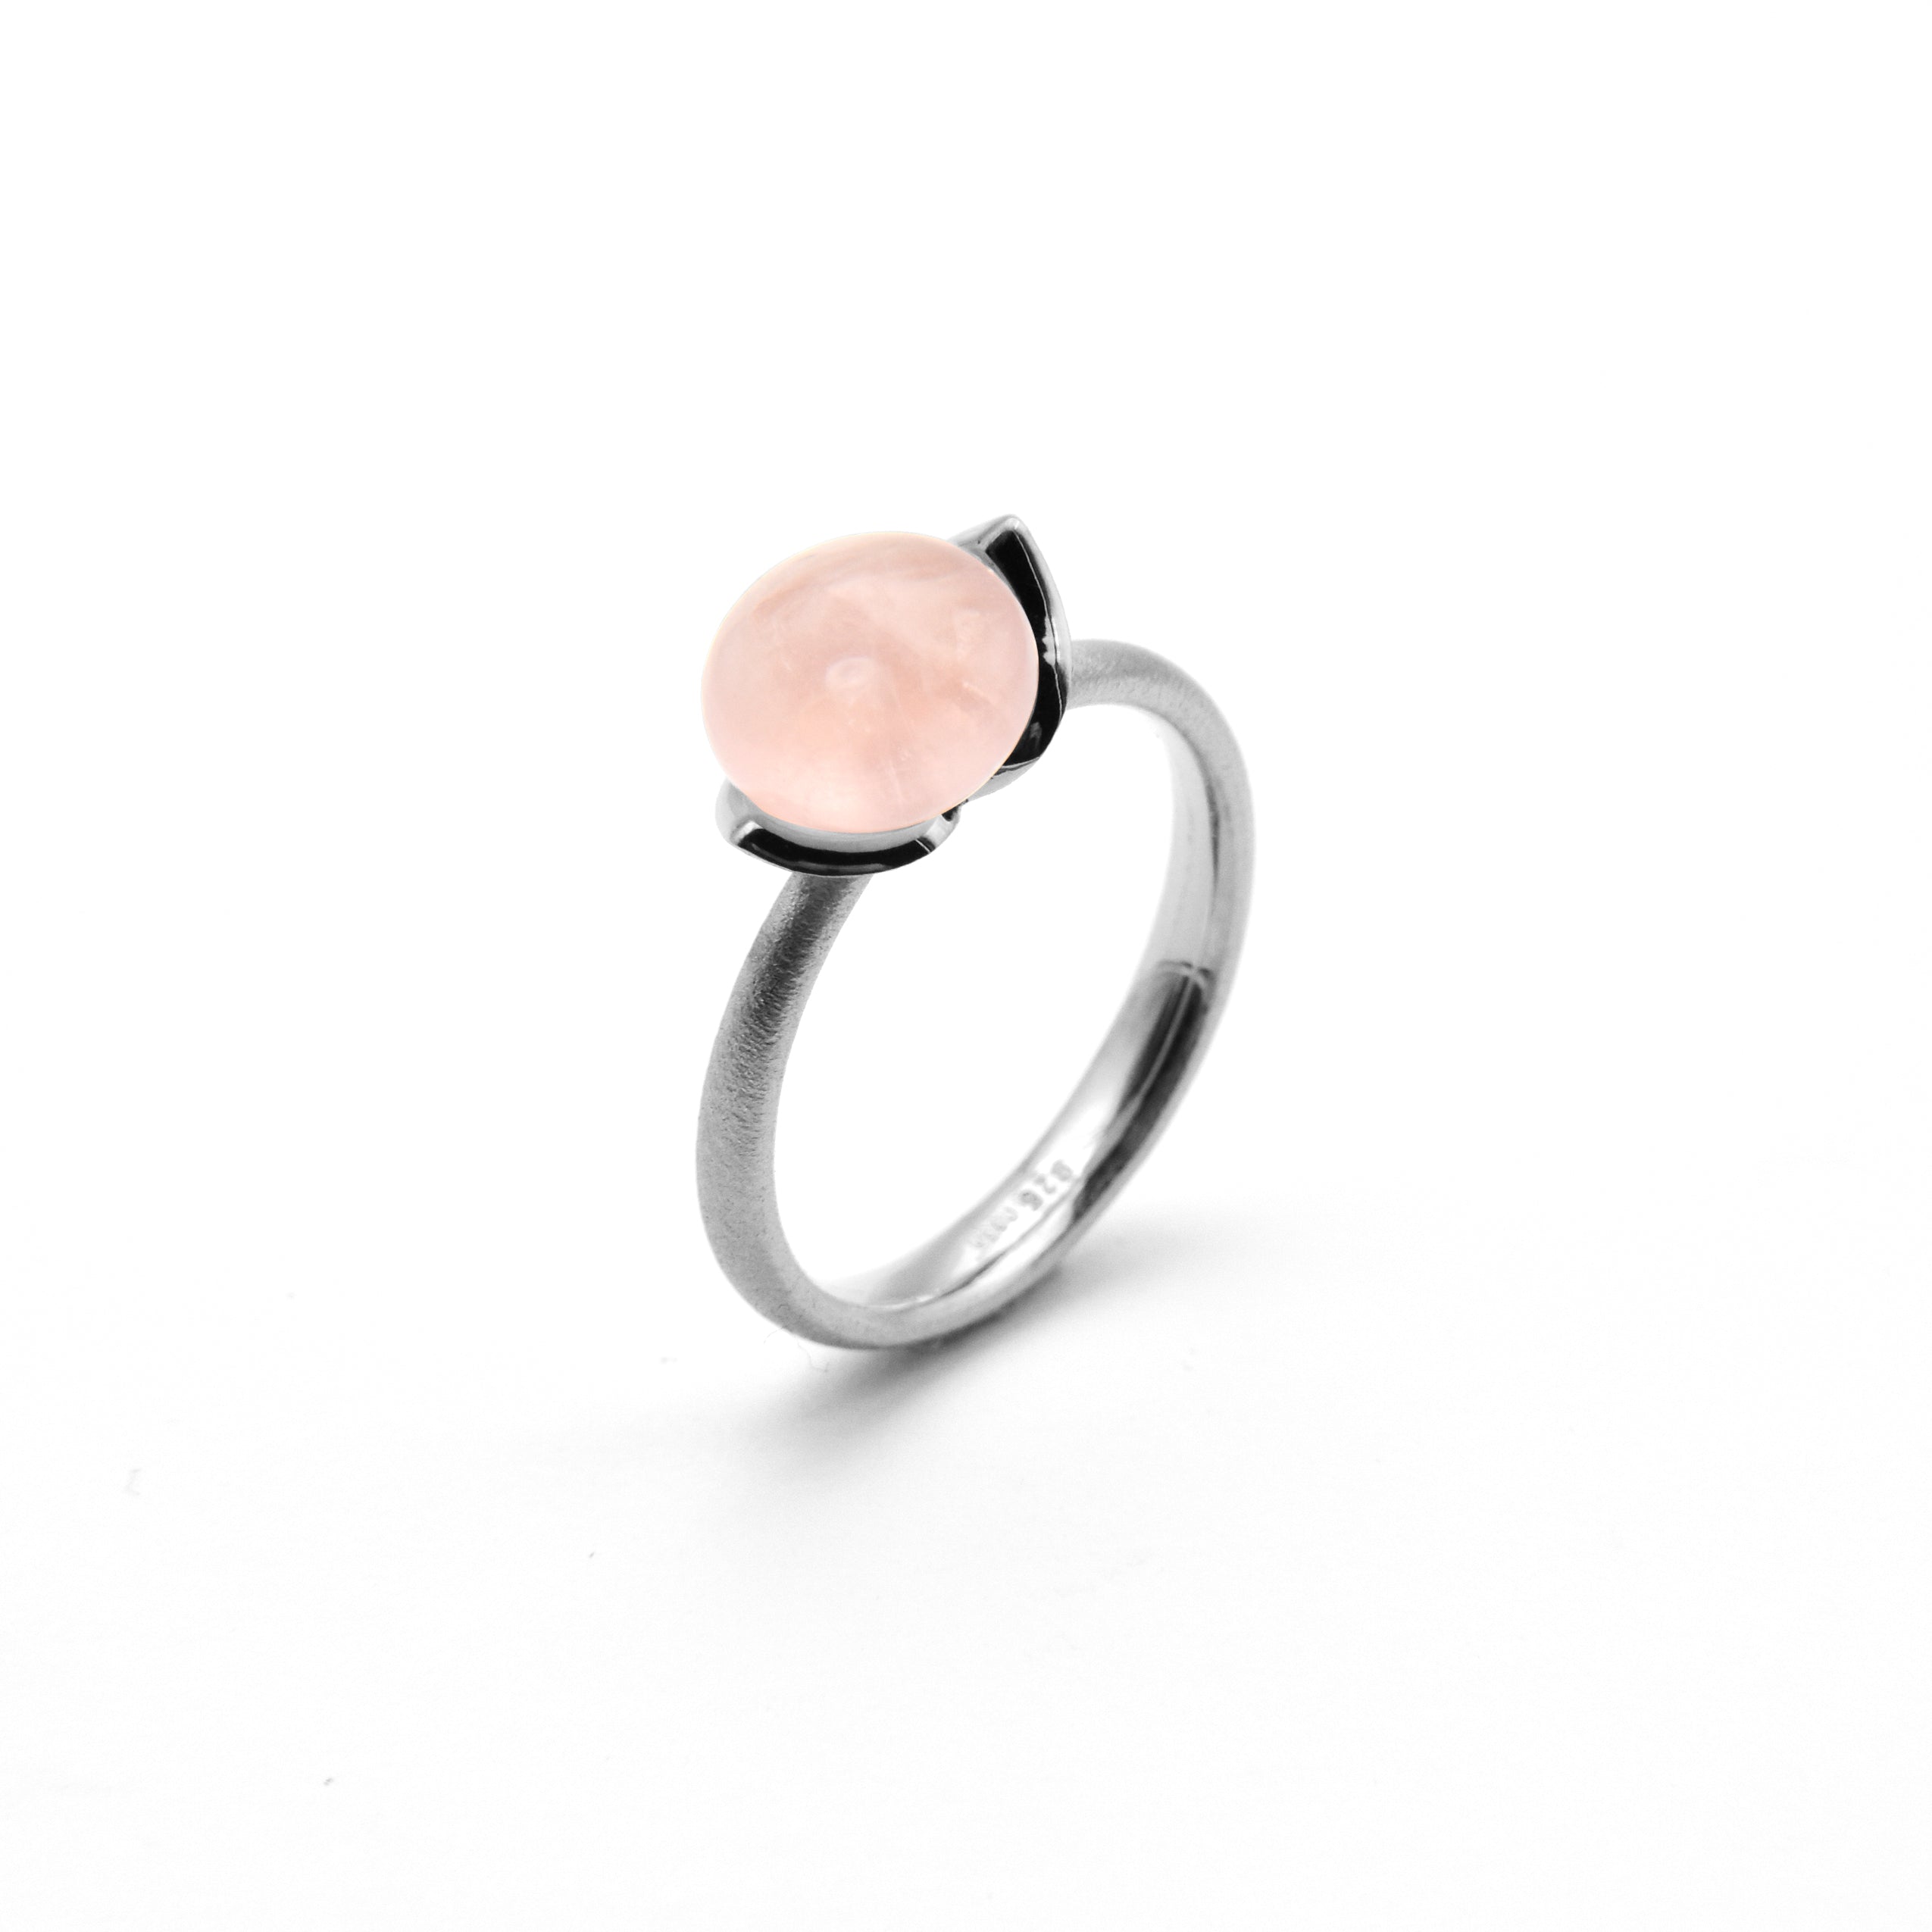 Dolce ring "smal" met rozenkwarts 925/-